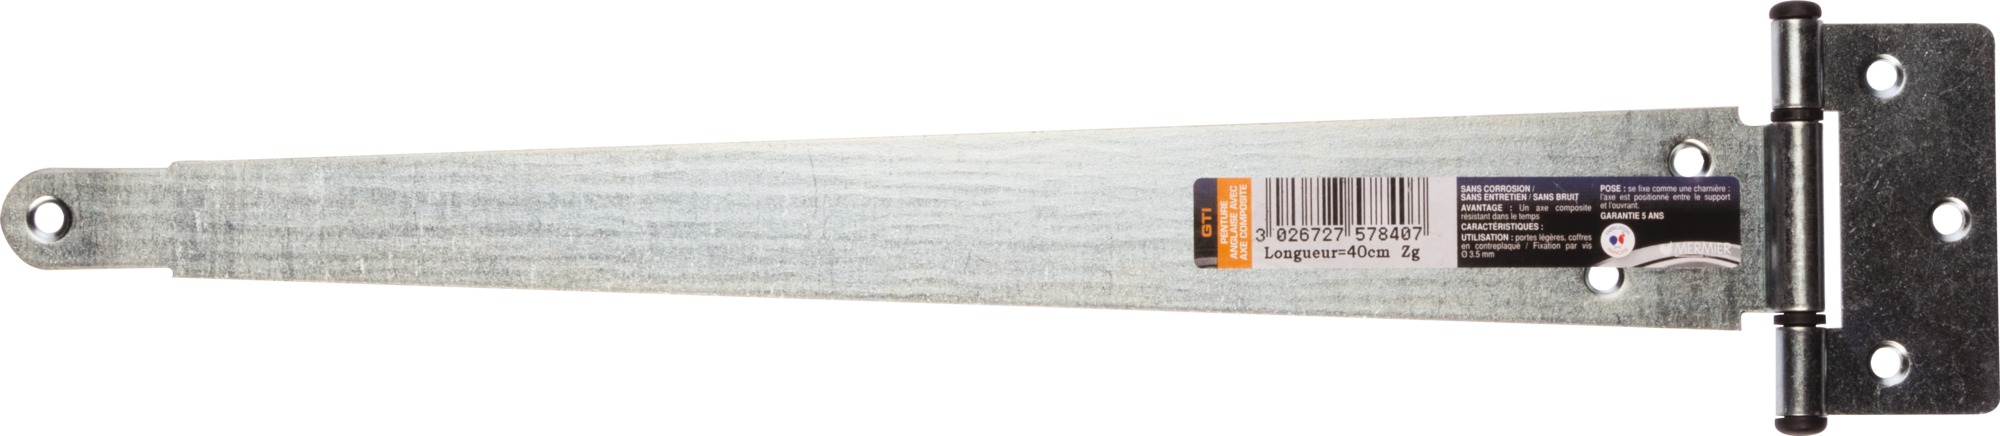 Penture anglaise acier zingué axe composite Mermier Quincaillerie - Longueur 40 cm